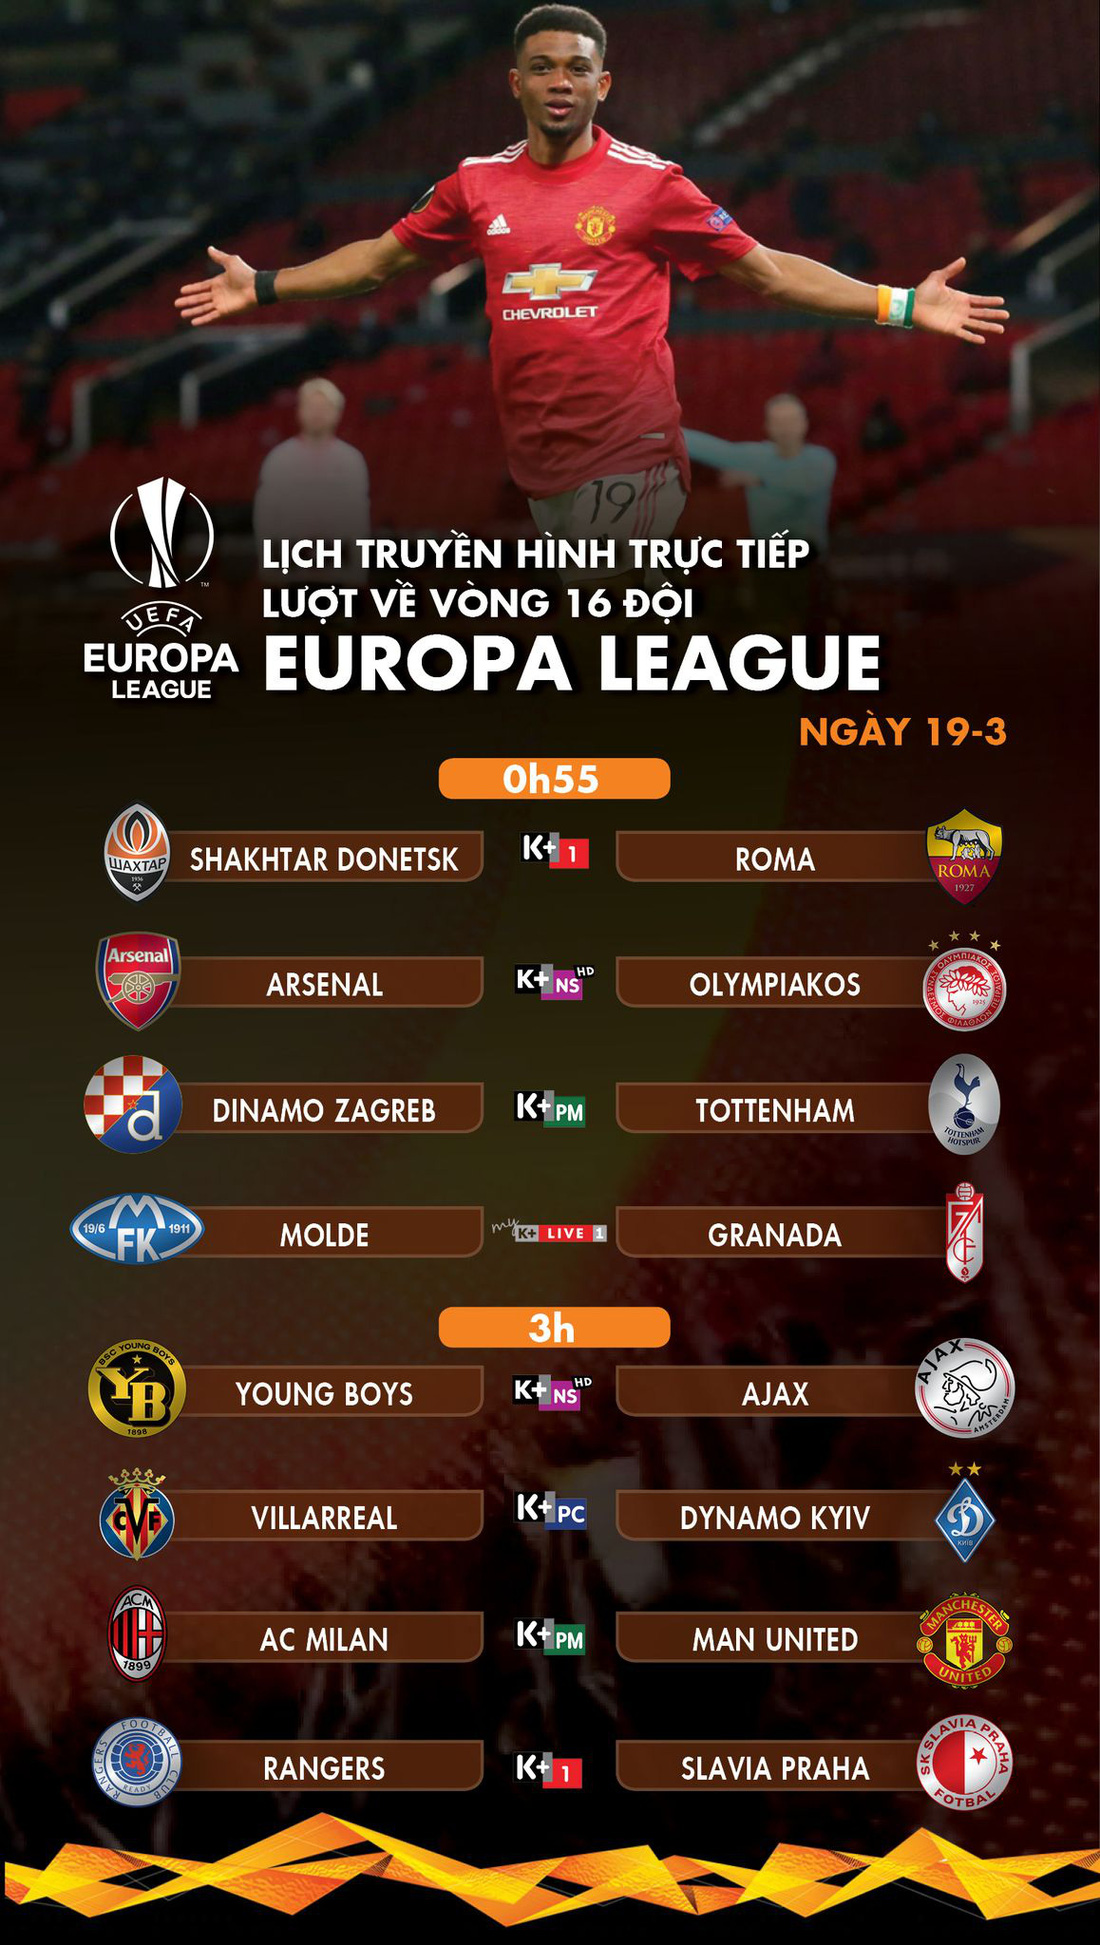 Lịch trực tiếp lượt về vòng 16 đội Europa League: Man United hay Milan sẽ đi tiếp? - Ảnh 1.